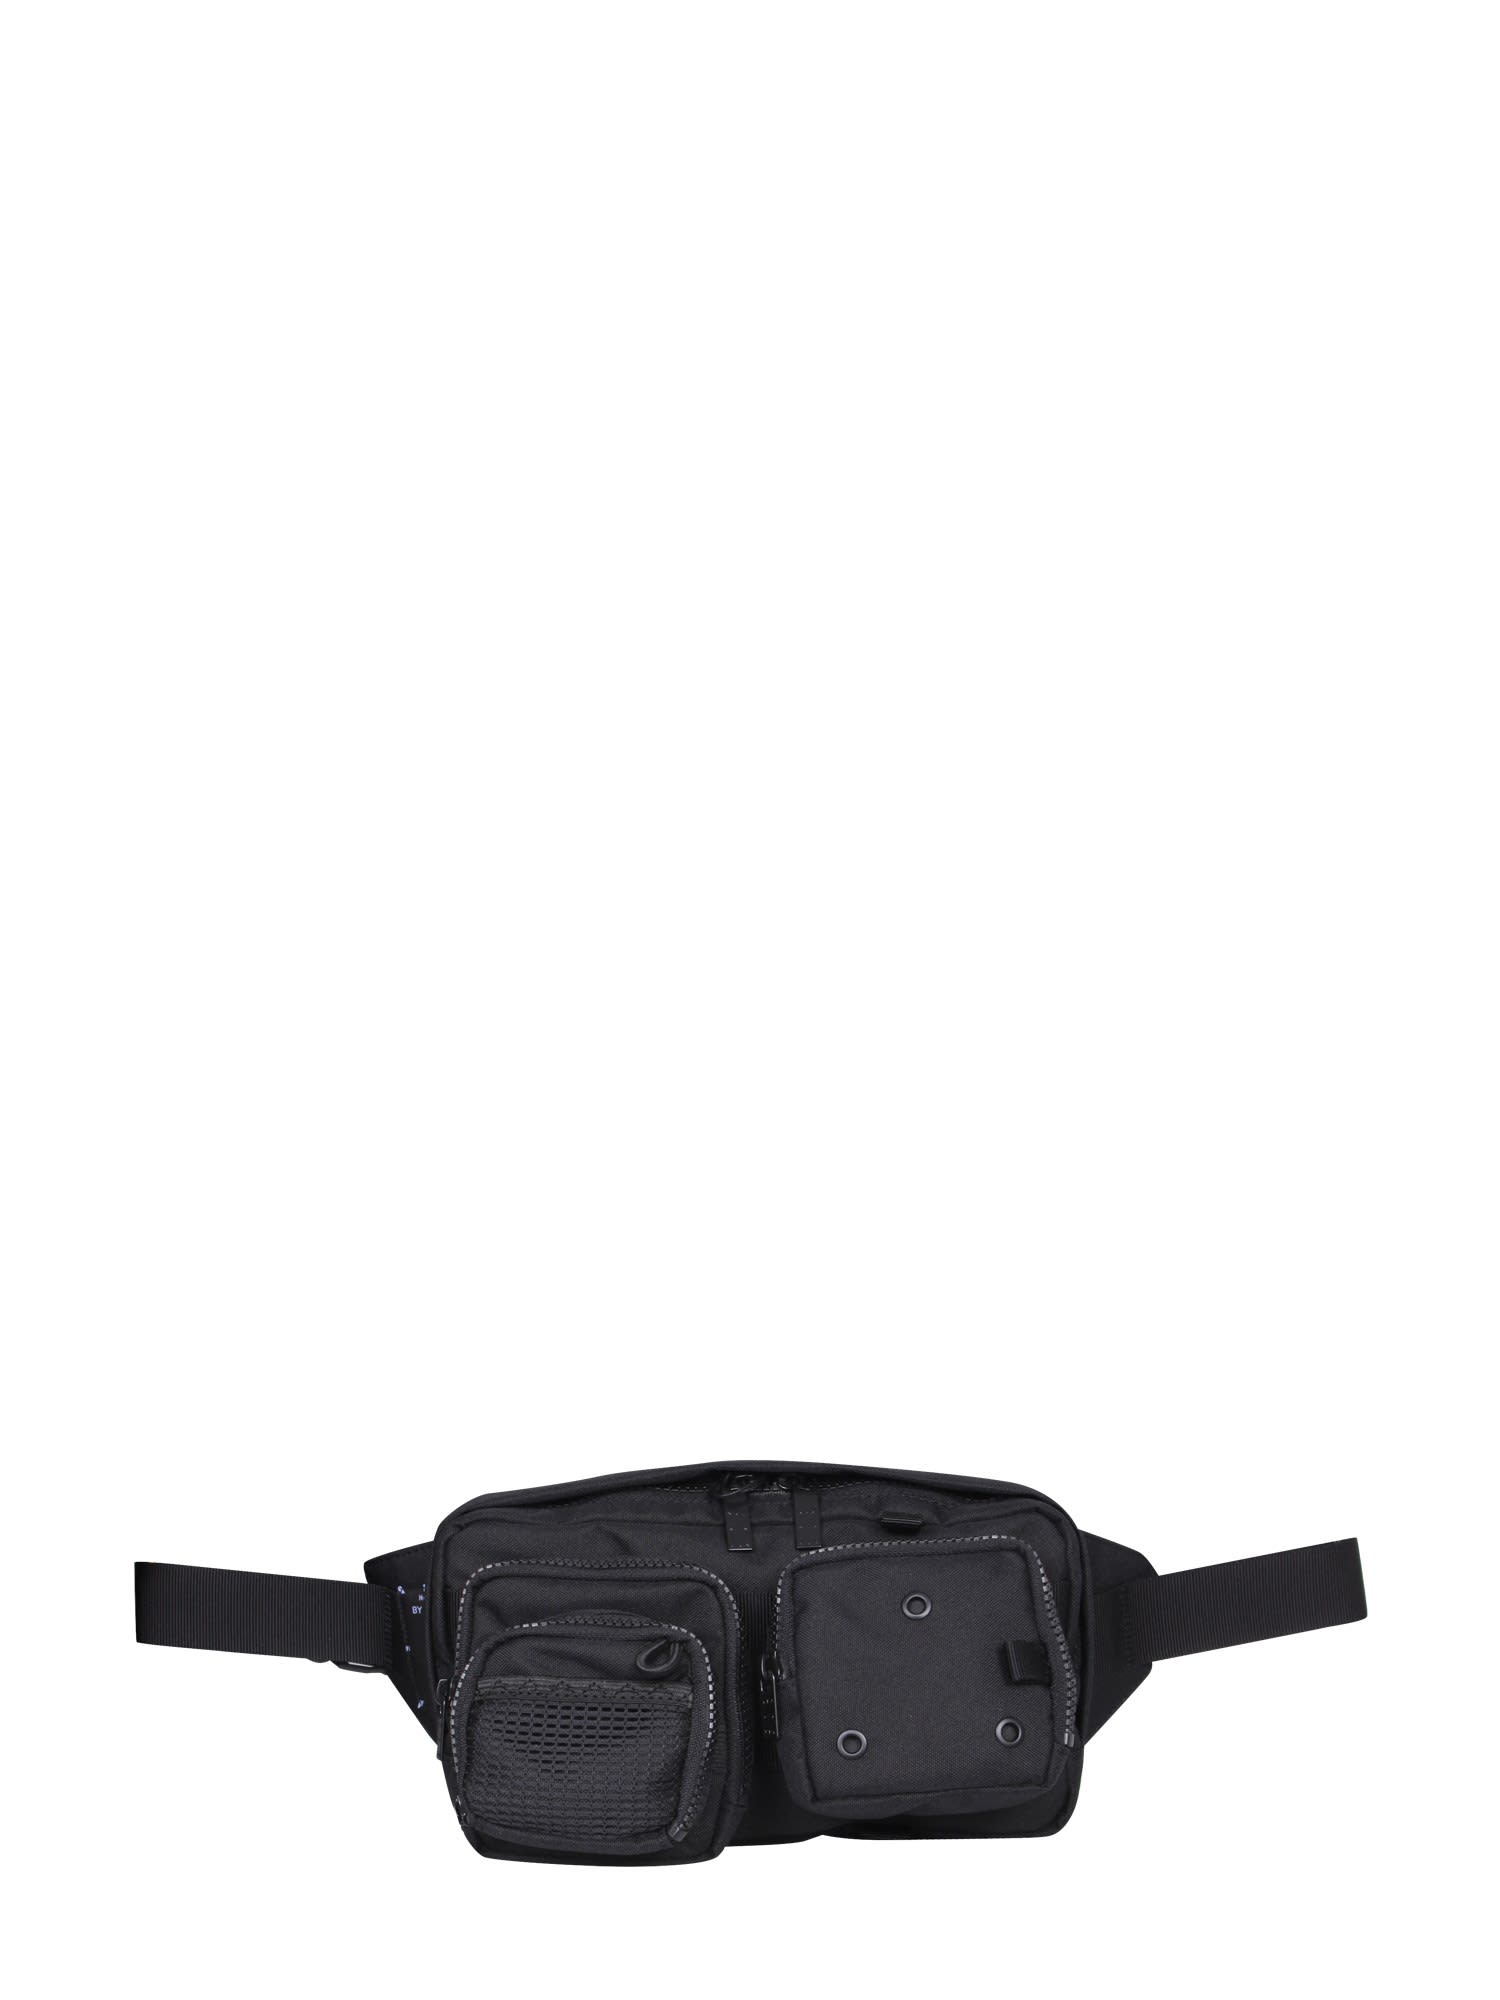 McQ Alexander McQueen Multi-pocket Belt Bag